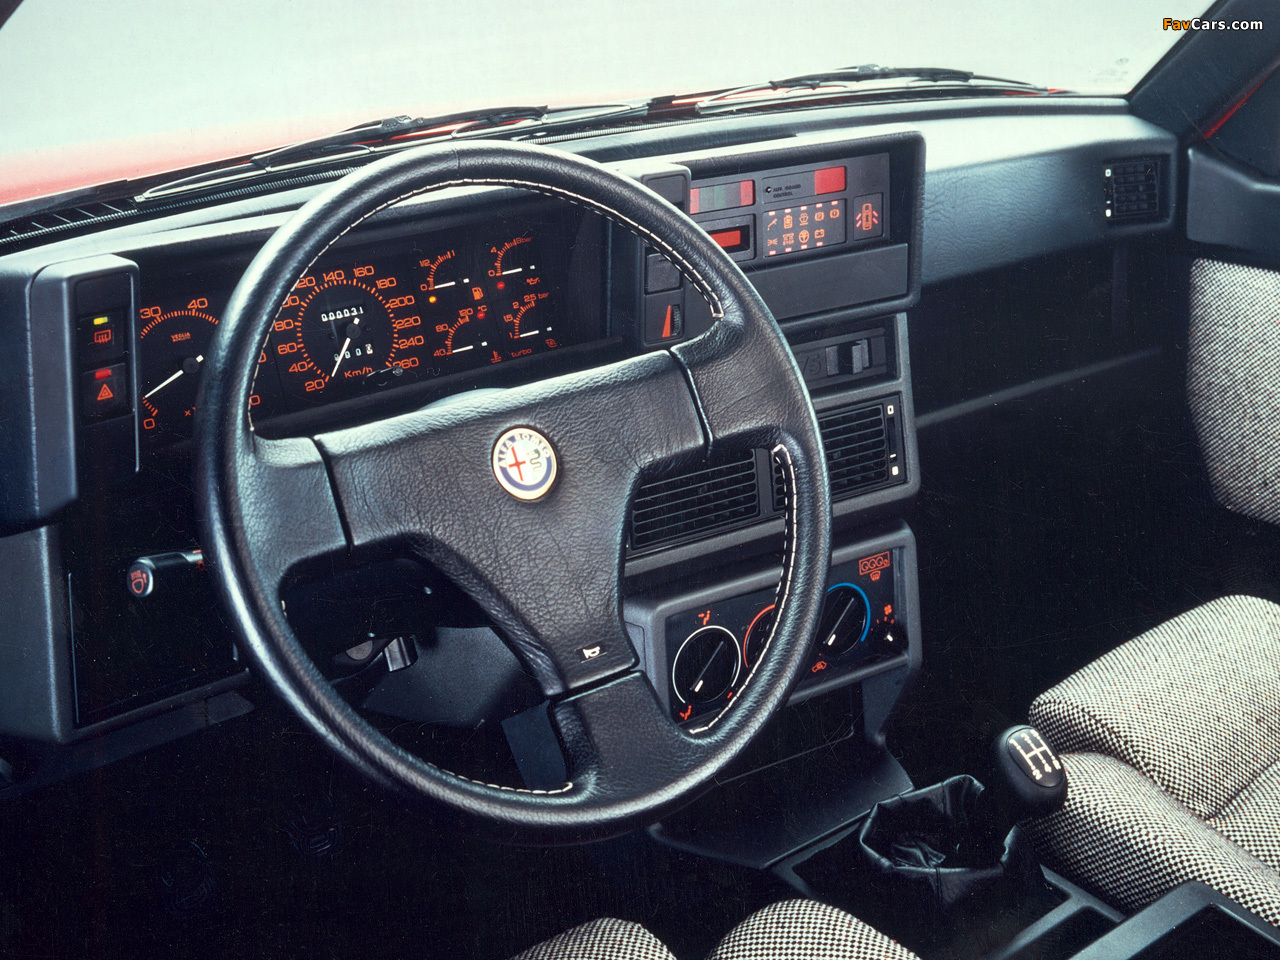 Alfa Romeo 75 1.8 Turbo Evoluzione 162B (1987) wallpapers (1280 x 960)